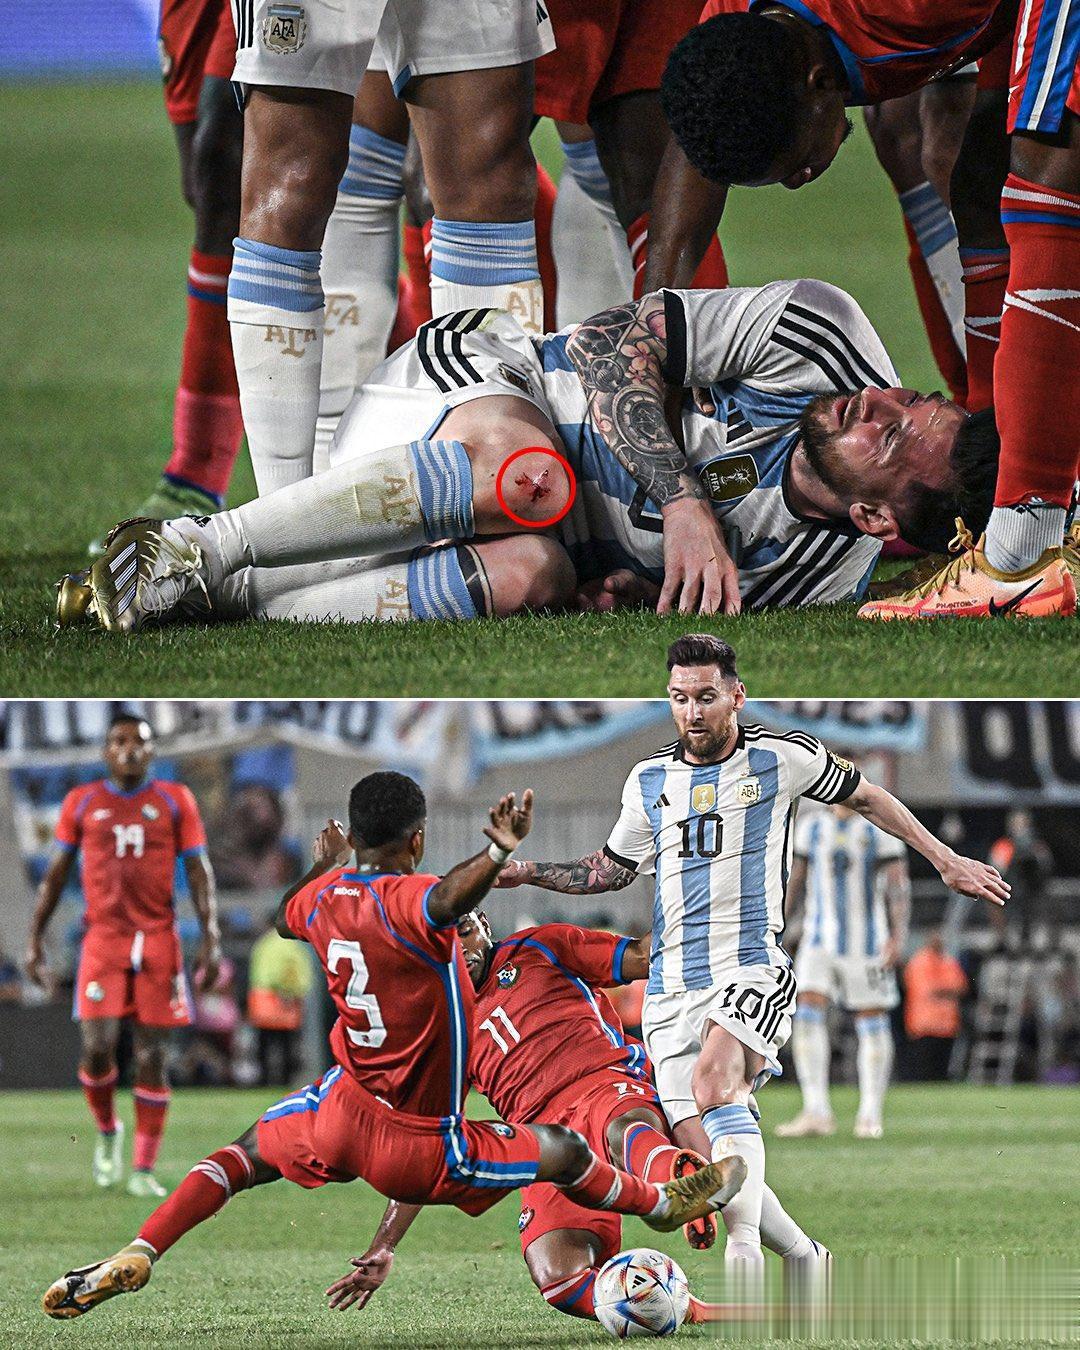 一场友谊赛，巴拿马球员对梅西下脚真狠，把他的膝盖都踢伤了，鲜血直流。梅西也痛得龇